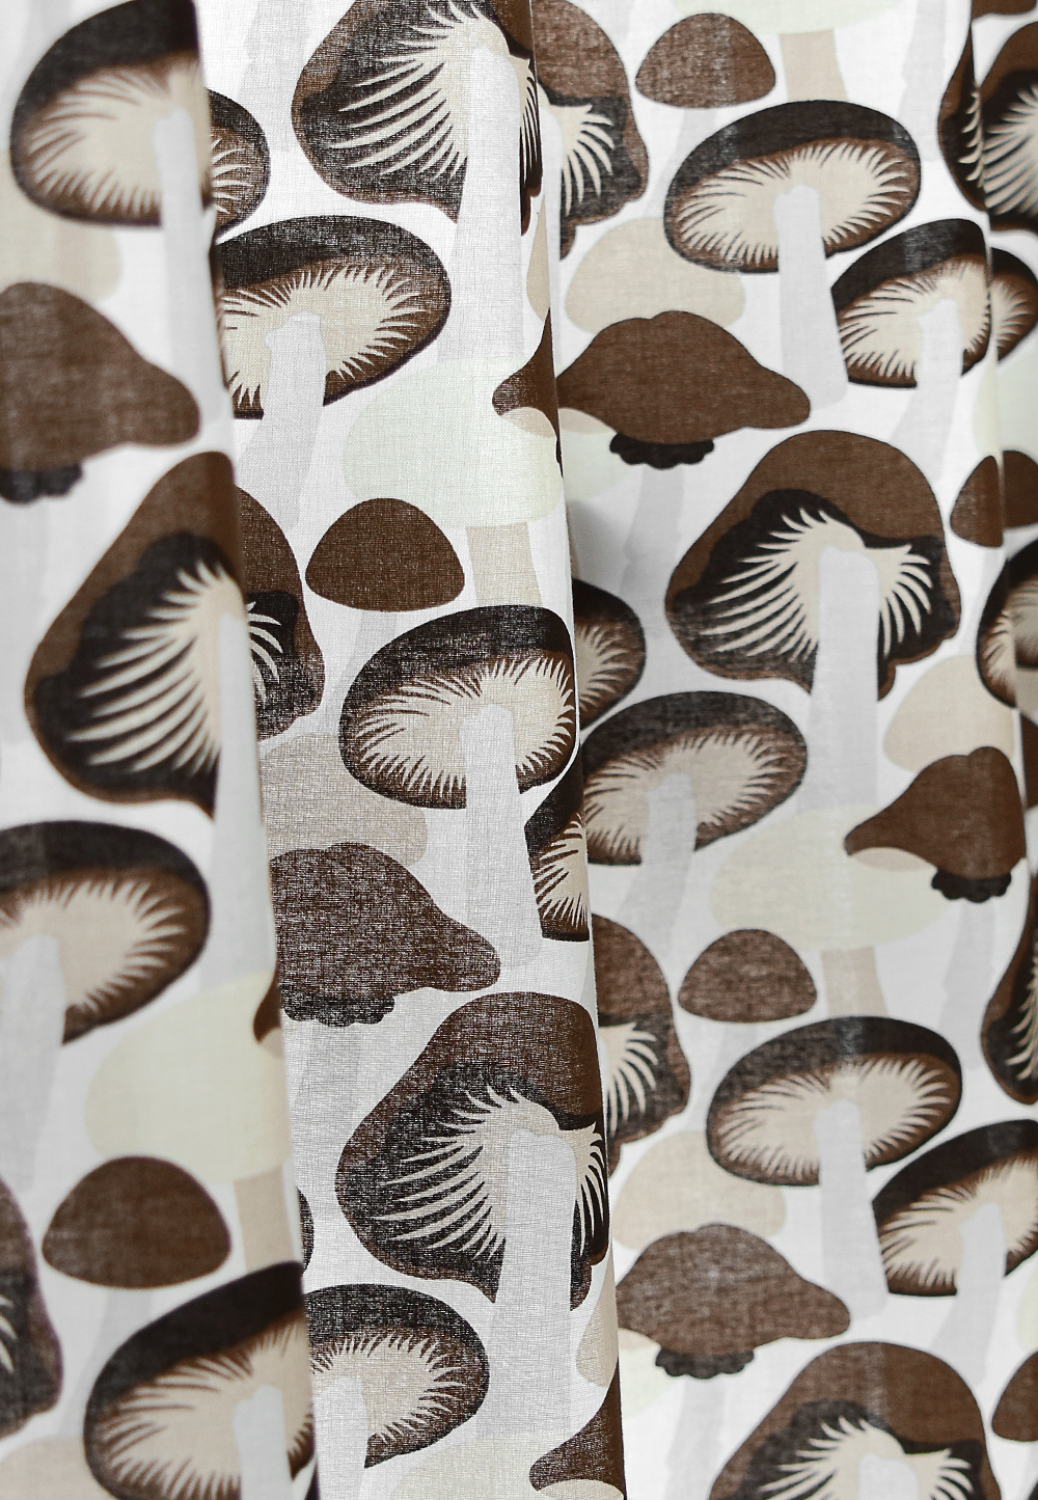 Mushroom Farm Curtain 머쉬룸 팜 커튼